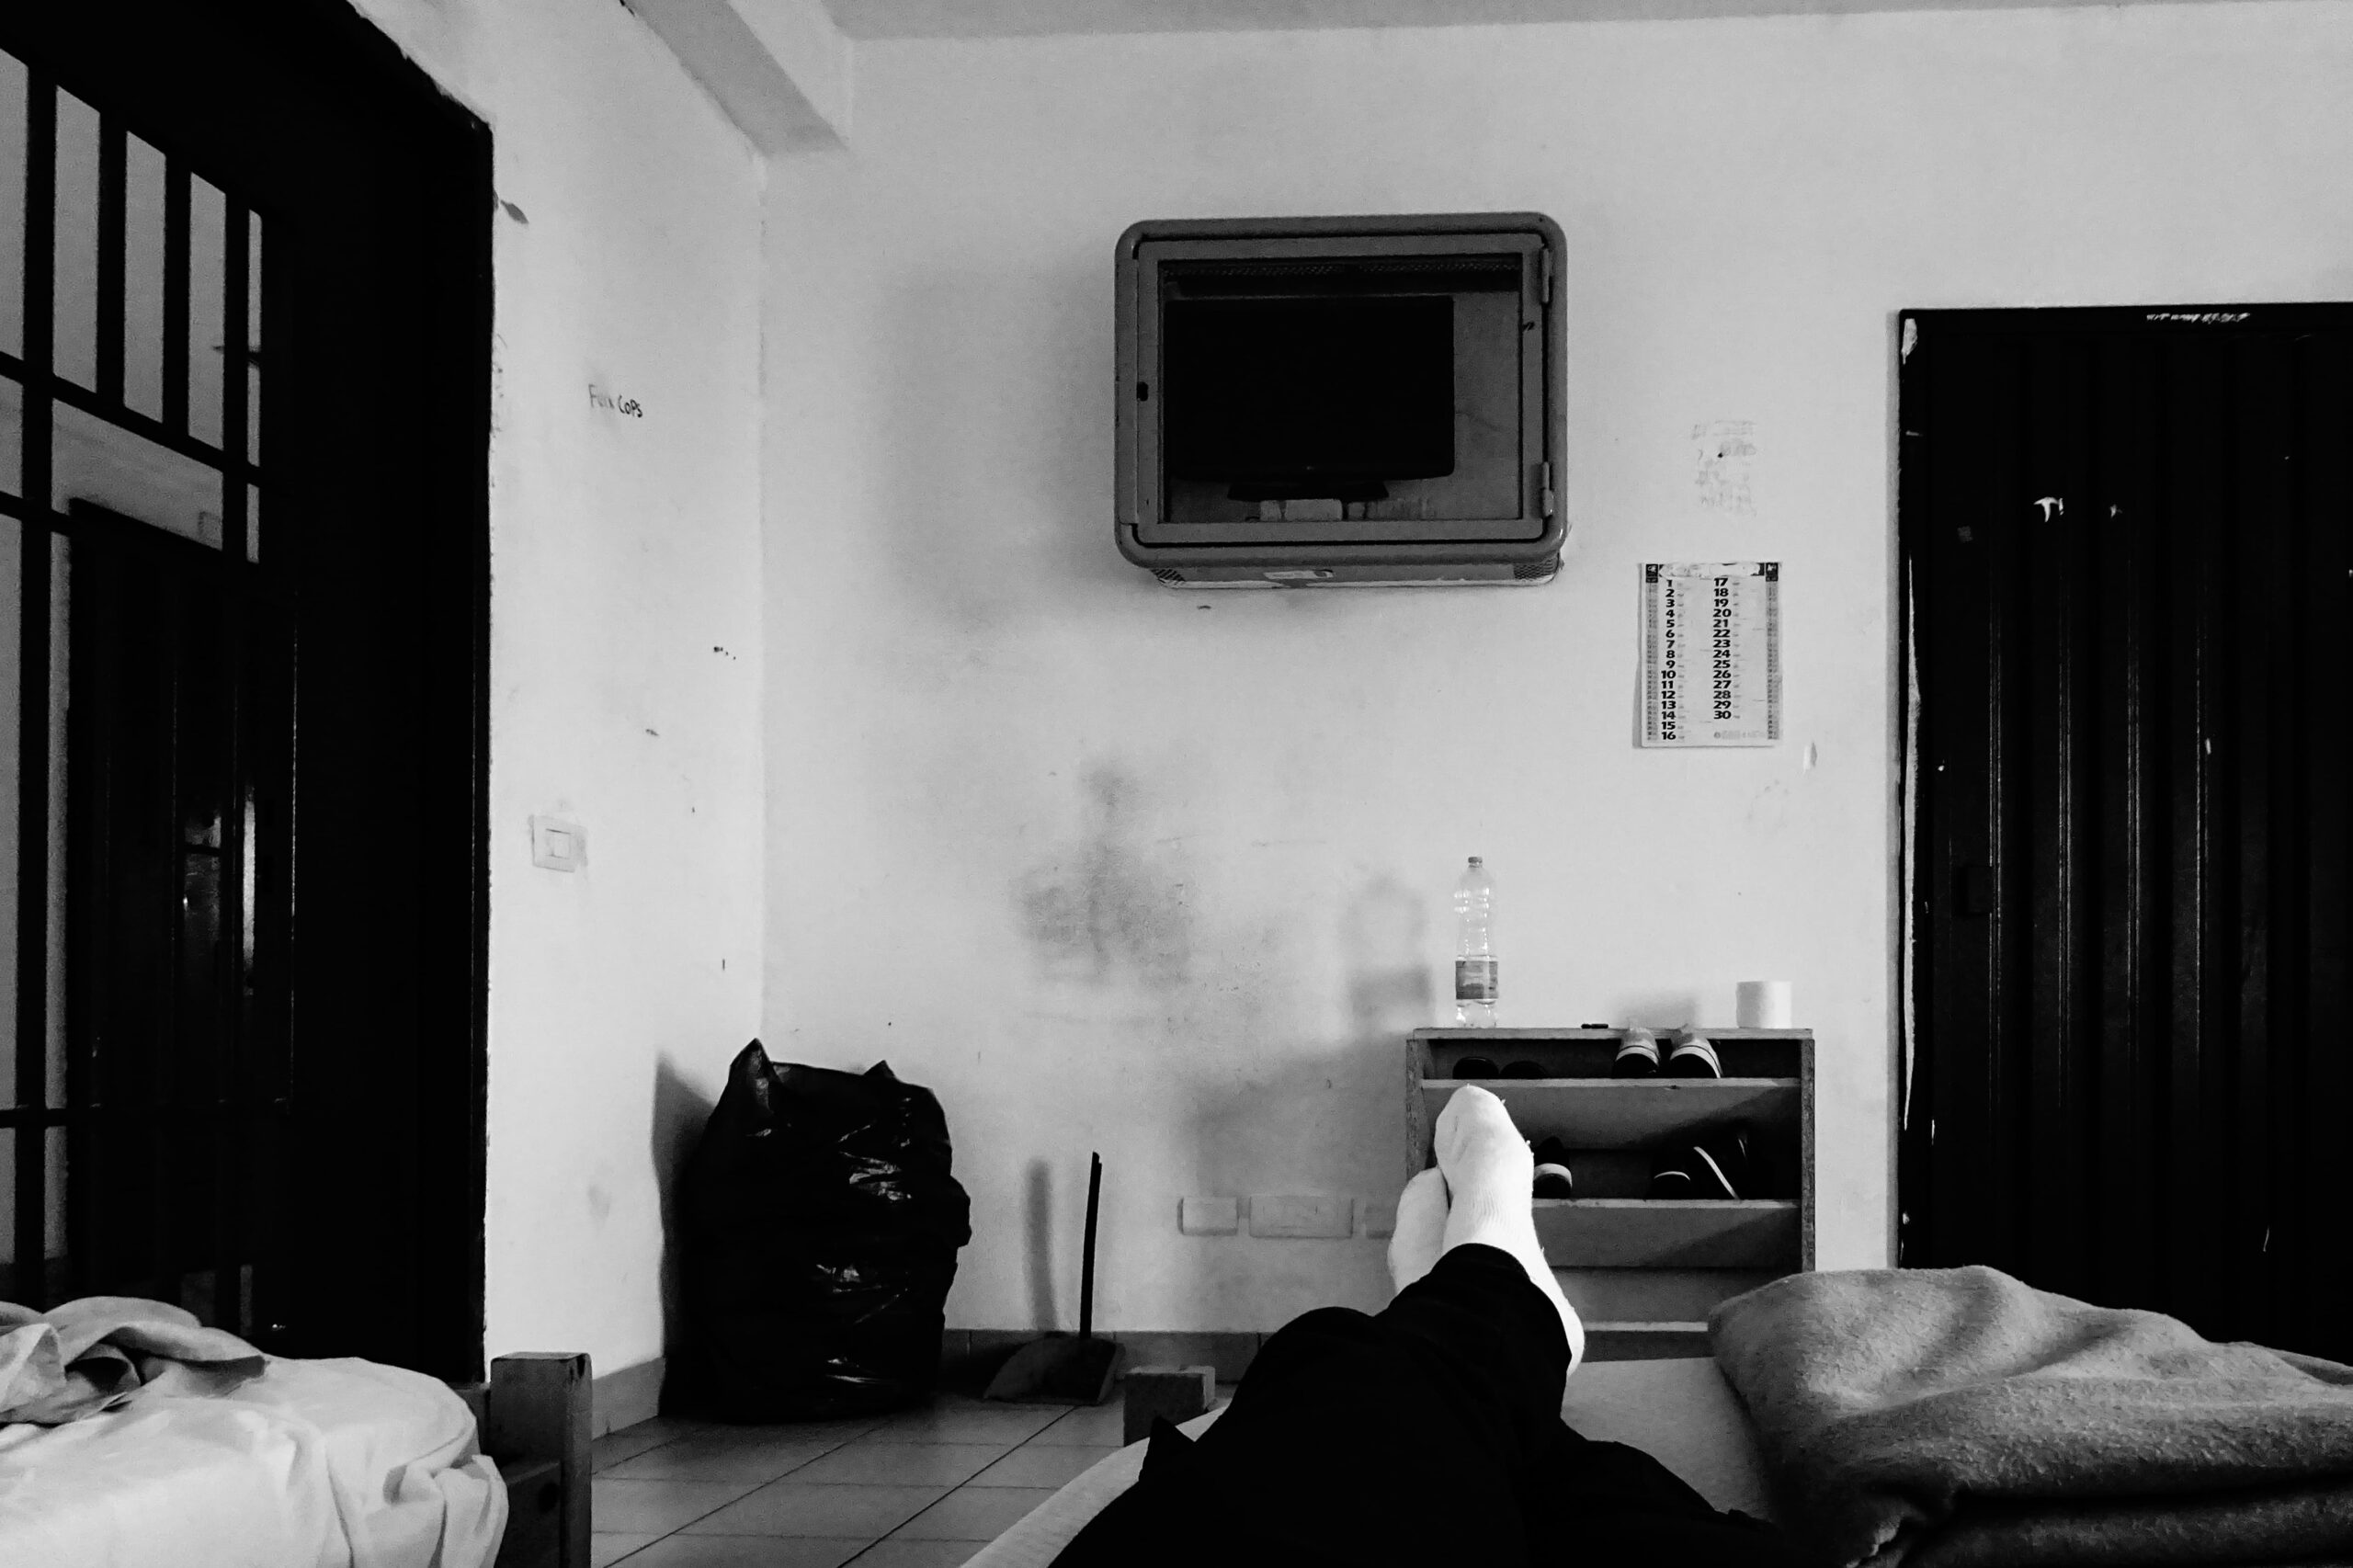 Carcere - foto in bianco e nero di un acella con dei mobili poveri, una branda su cui è diseso un deteneto di cui si vedono i piedi coperti da calzini bianchi